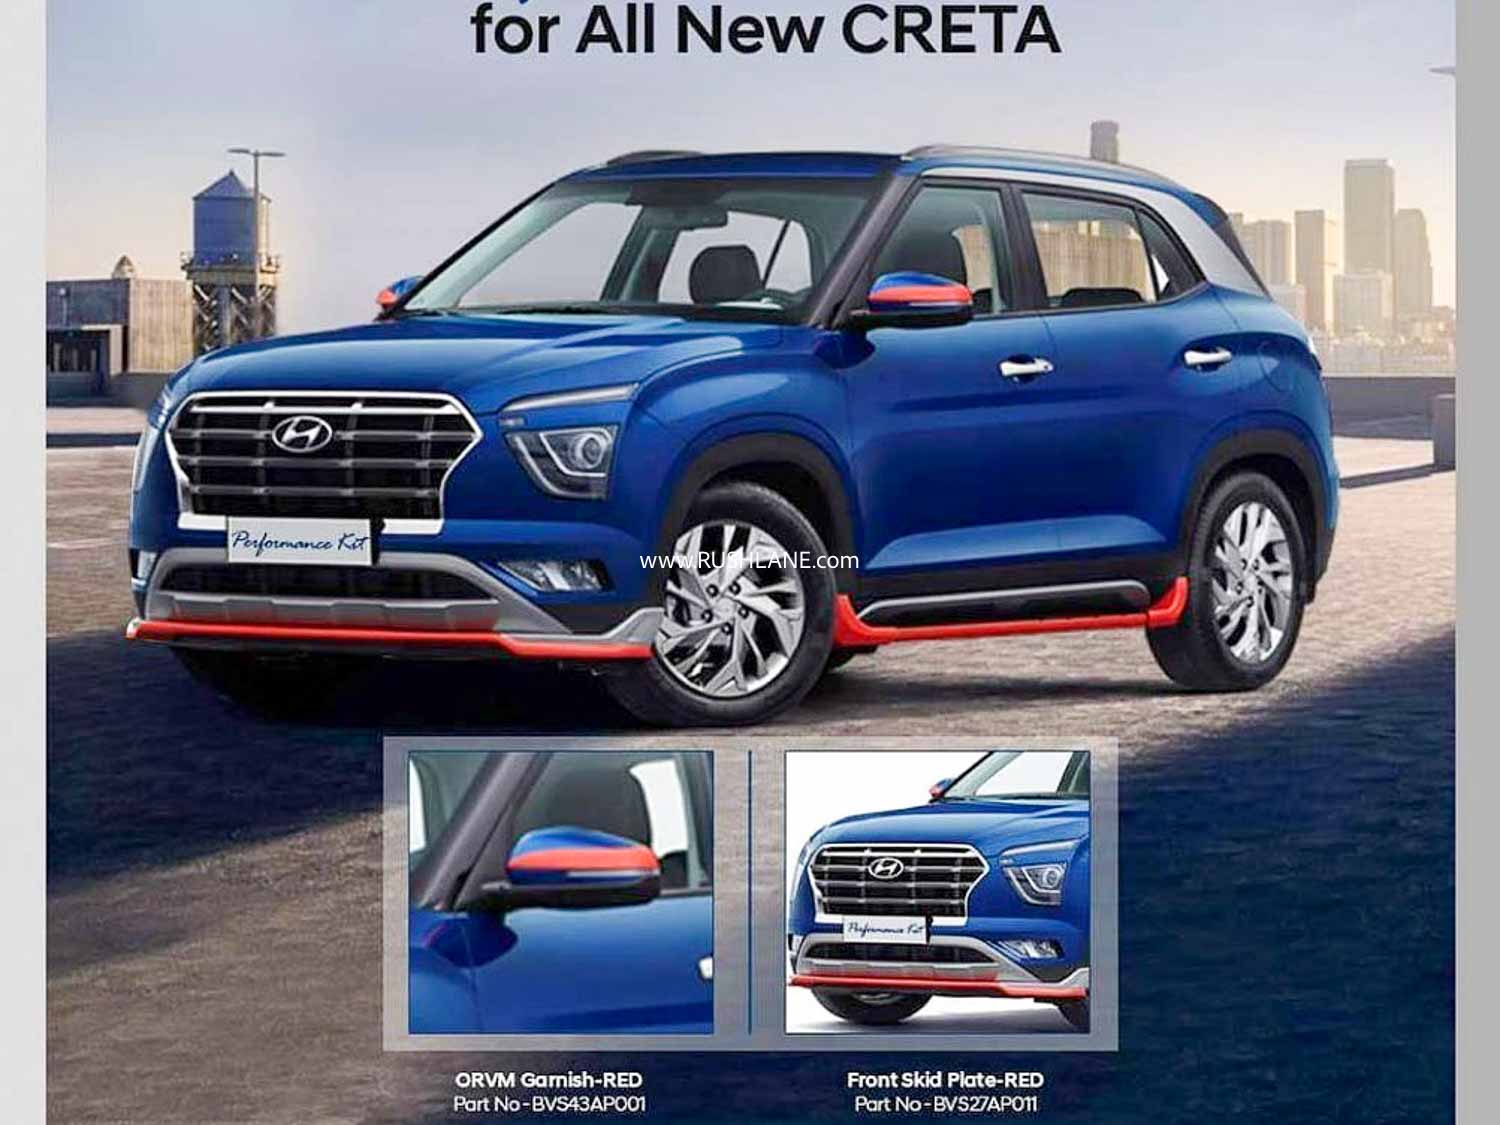 2020 Hyundai Creta Performance Kit